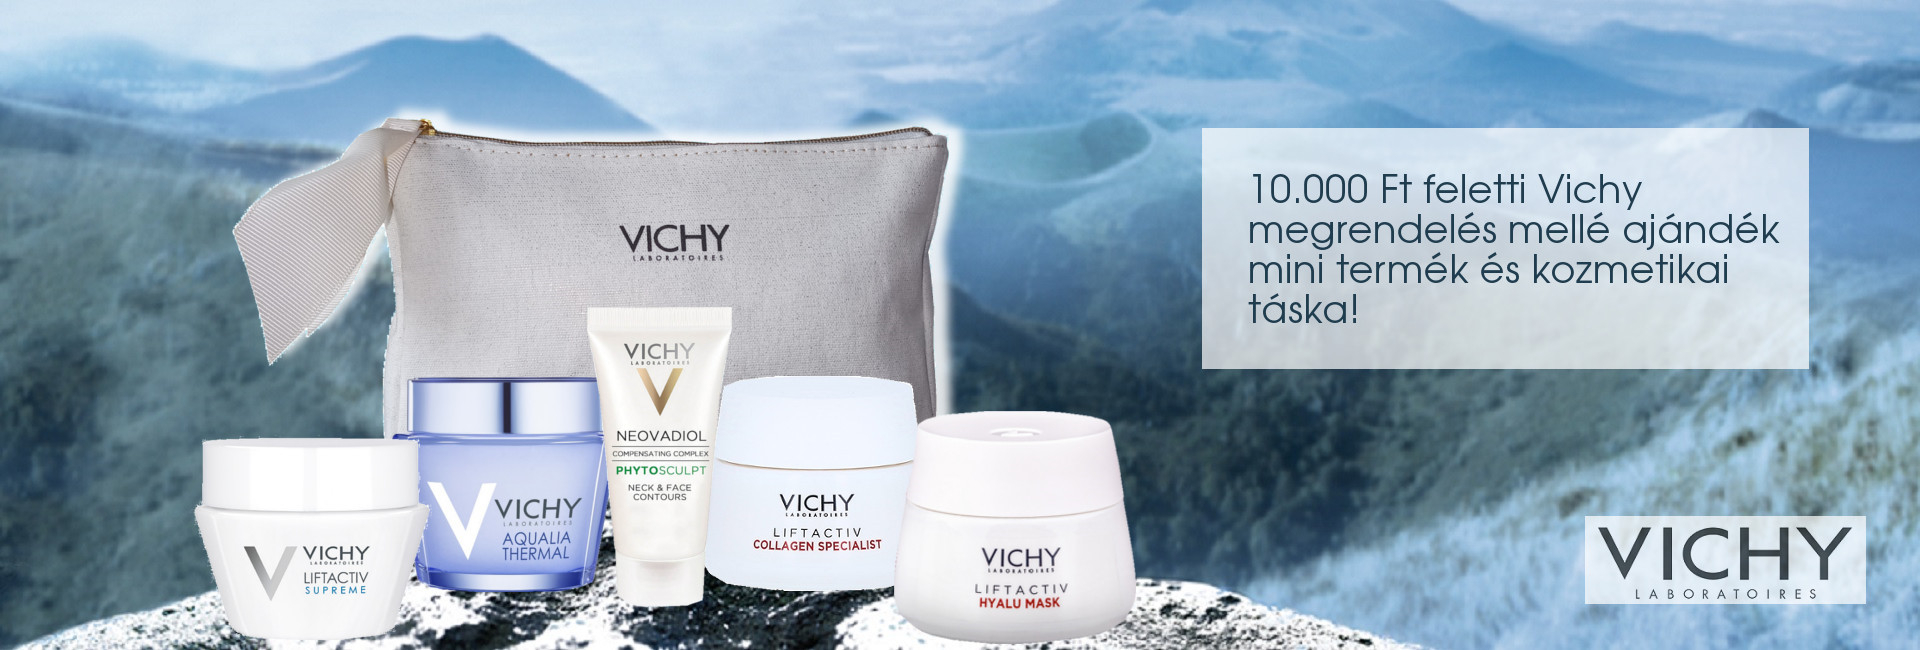 2020. december 3-10. között minden 10.000 Ft feletti Vichy megrendelés mellé választható Vichy mini arcápolót és kozmetikai táskát adunk ajándékba!